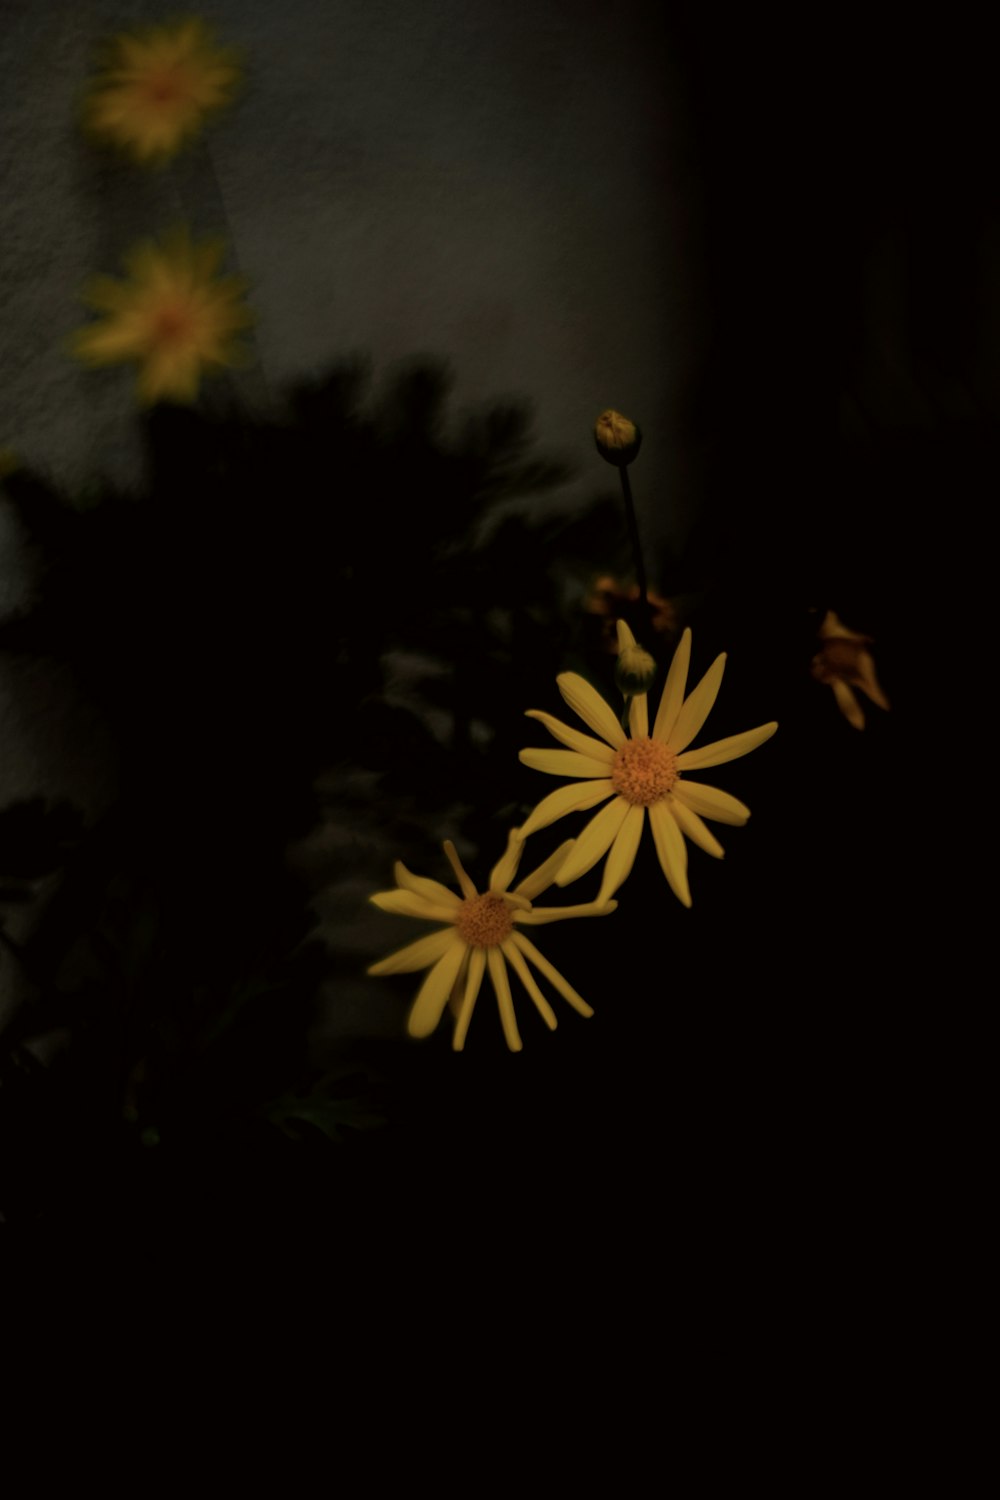 flor amarela e preta na fotografia de perto